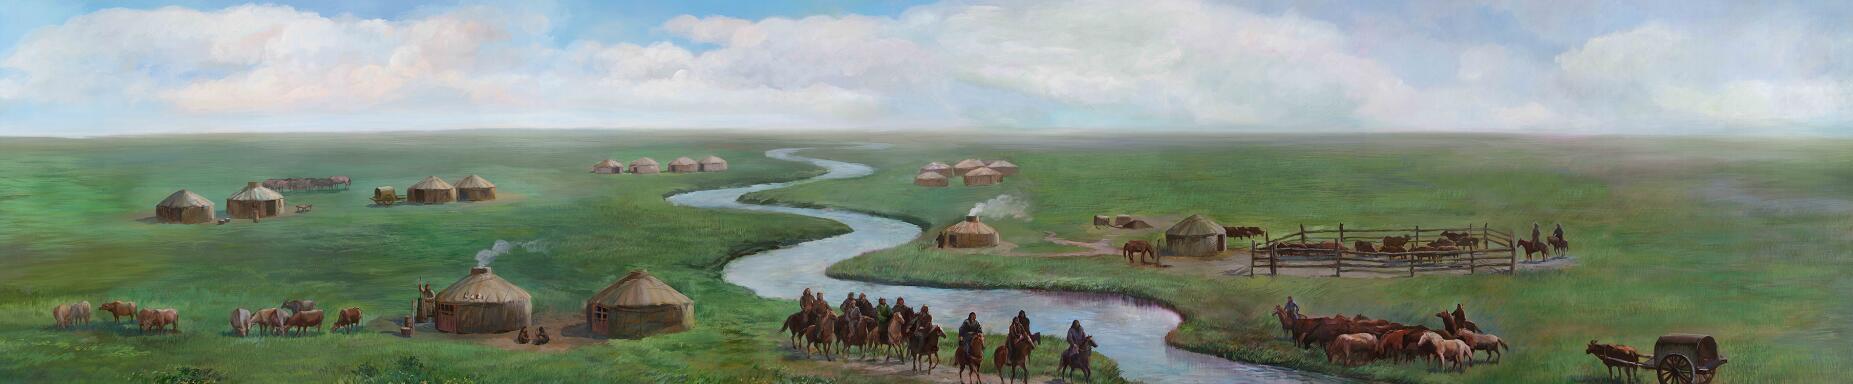 中世纪的蒙古游牧民族图片